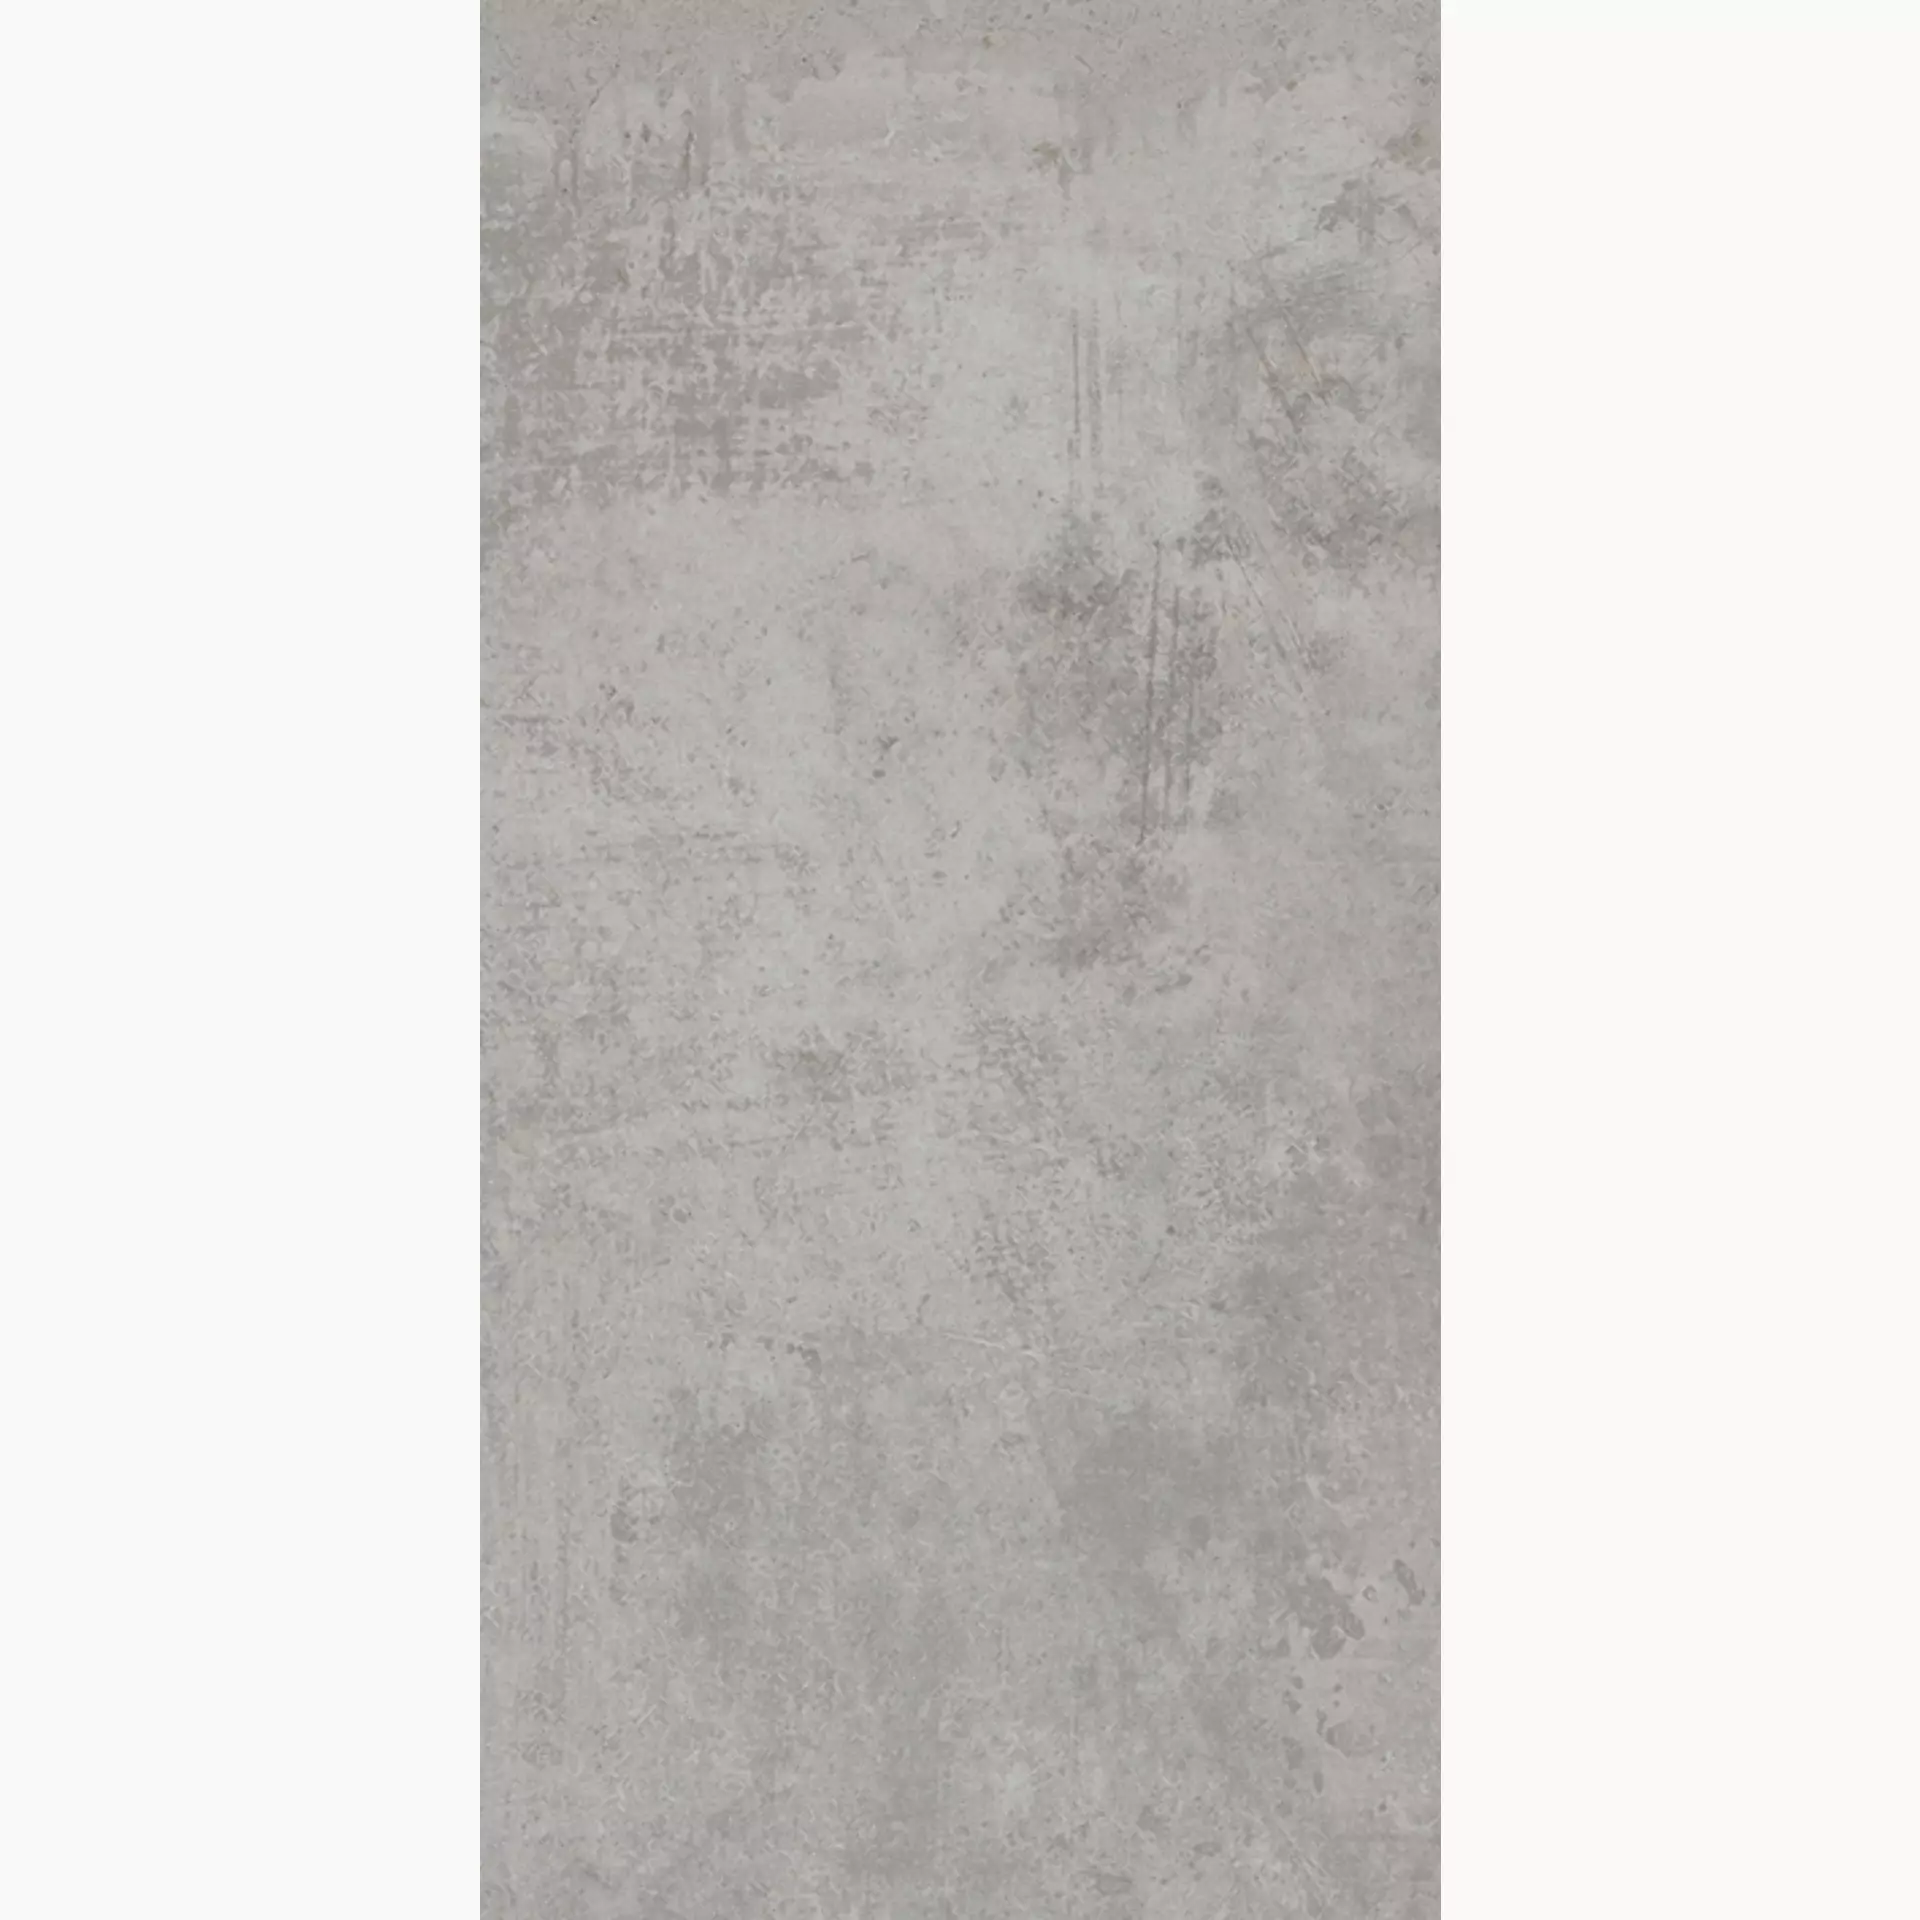 Wandfliese,Bodenfliese Villeroy & Boch Atlanta Concrete Grey Matt Concrete Grey 2394-AL60 matt 30x60cm rektifiziert 10mm